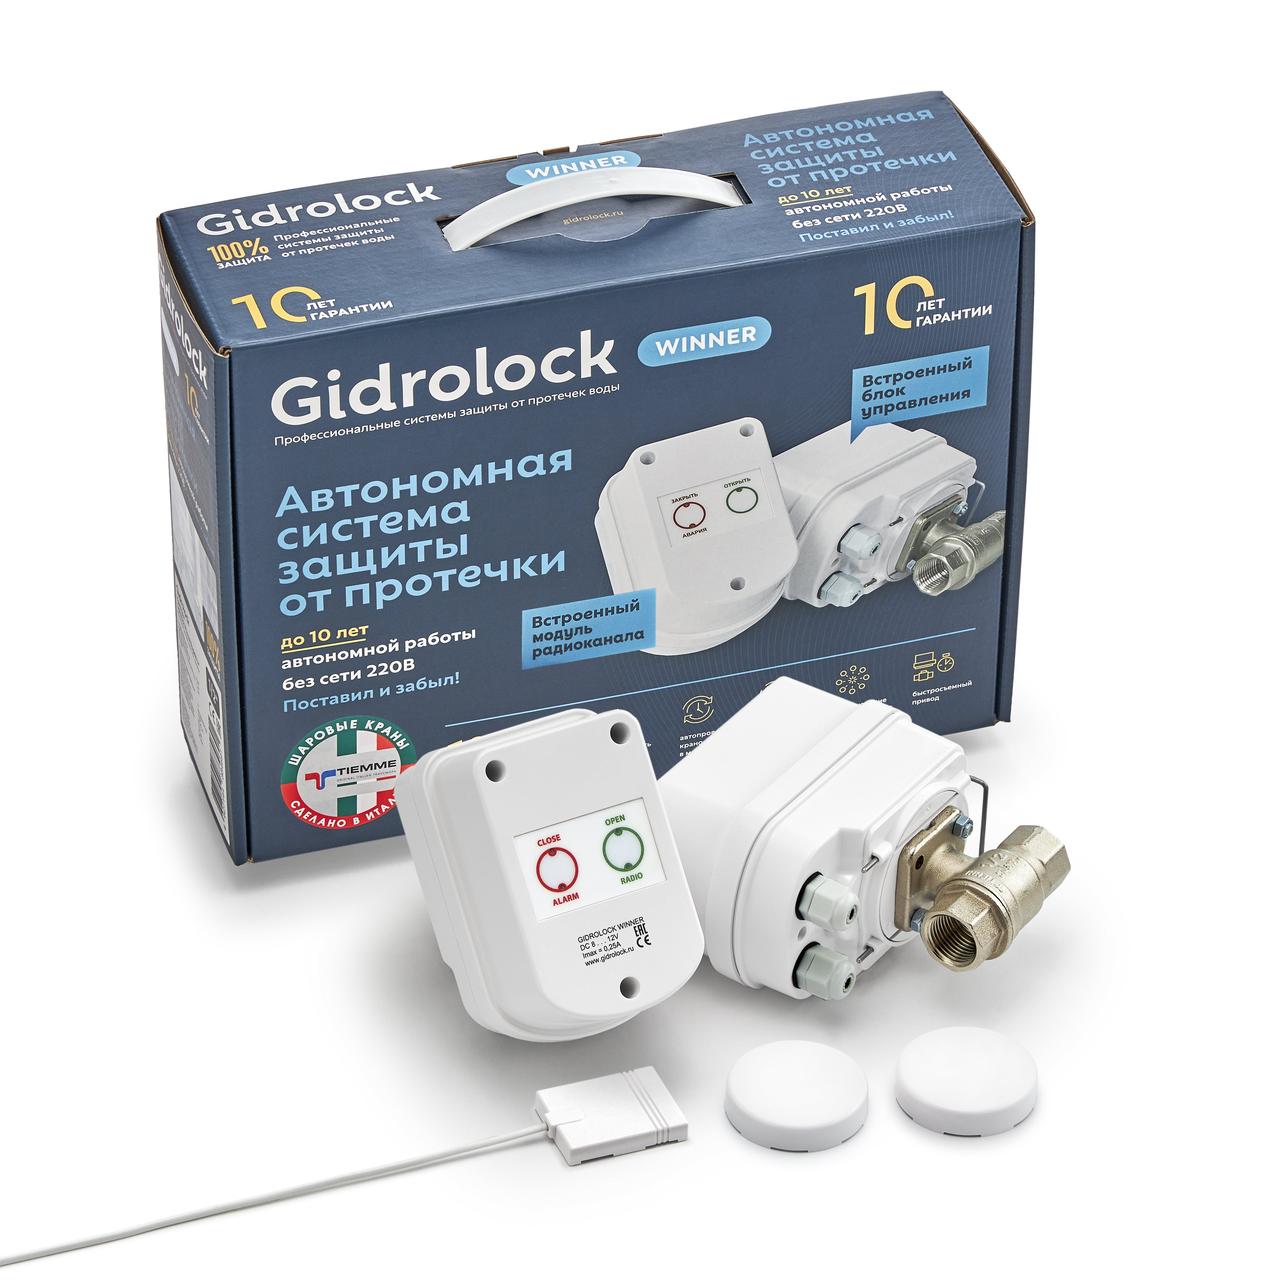 Система защиты от протечек Gidrolock Winner Tiemme 3/4" (2 электропривода), от батареек